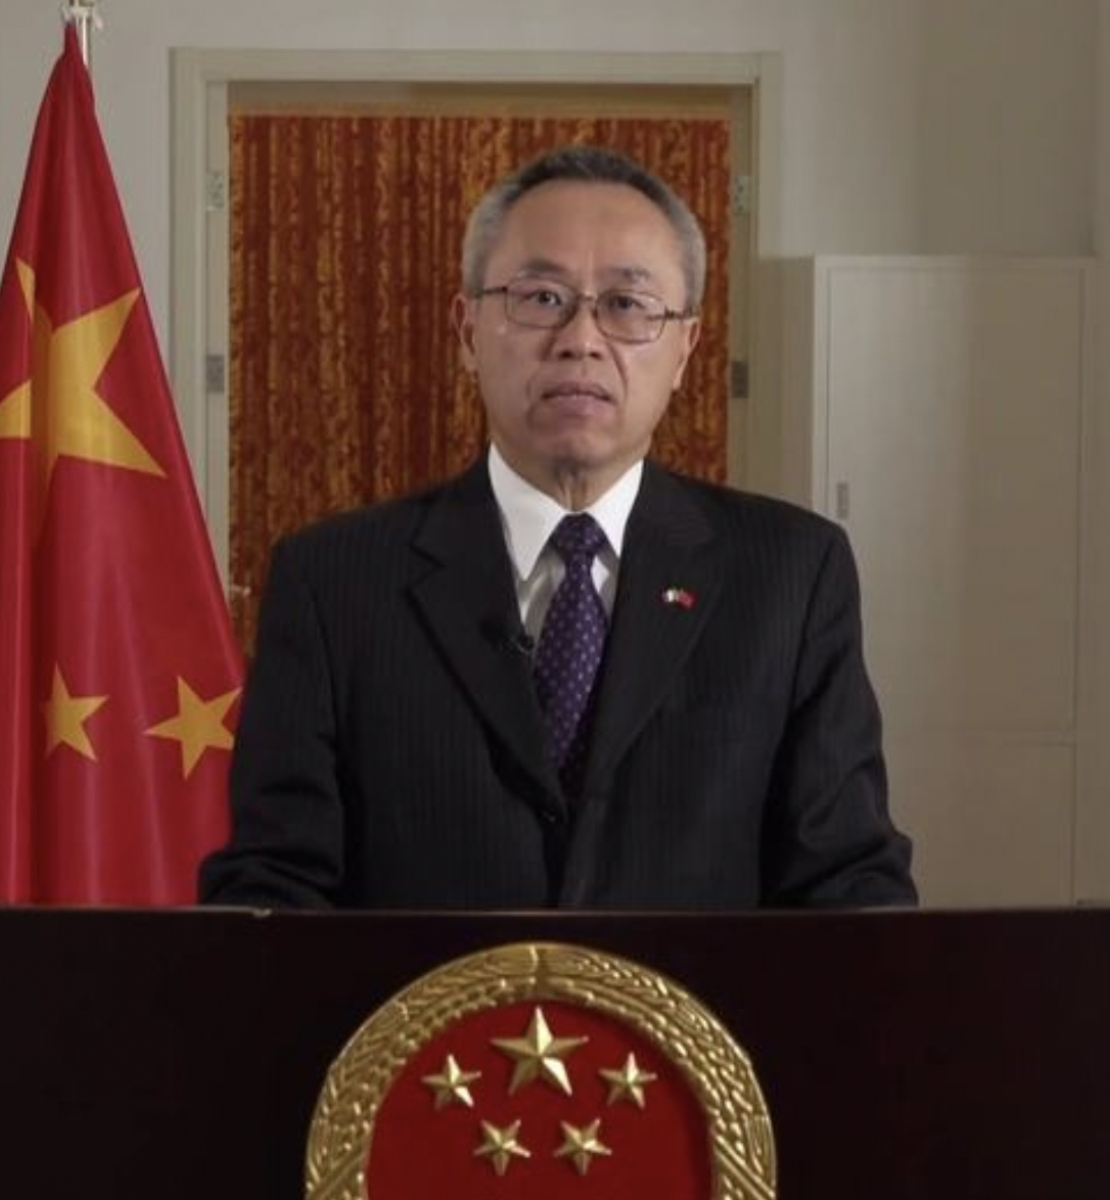 联合国秘书长古特雷斯今天宣布，任命来自中国的资深外交官李军华担任下一任主管经济和社会事务的副秘书长。